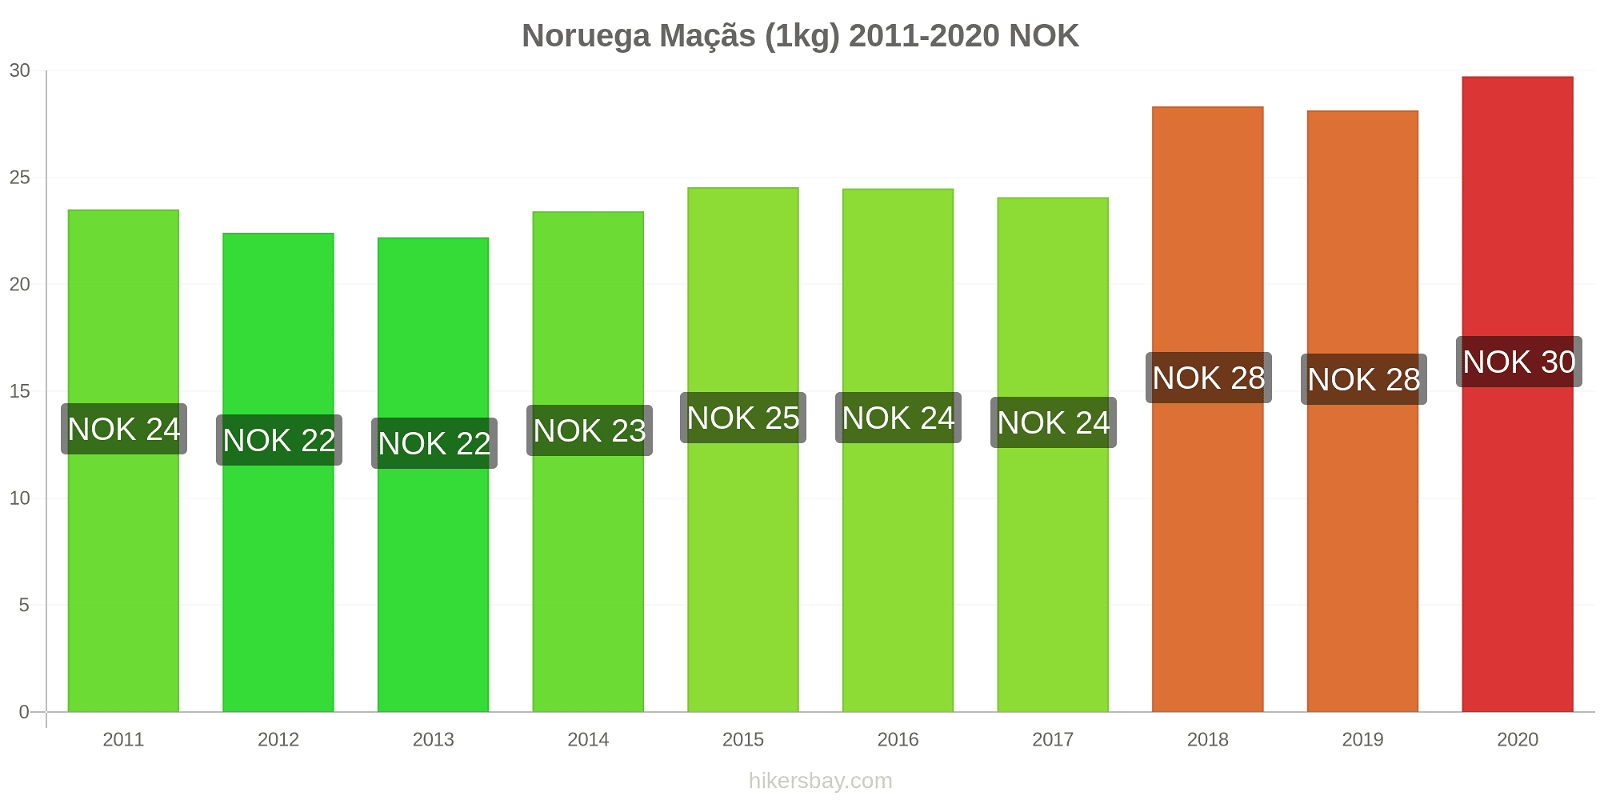 Noruega variação de preço Maçãs (1kg) hikersbay.com